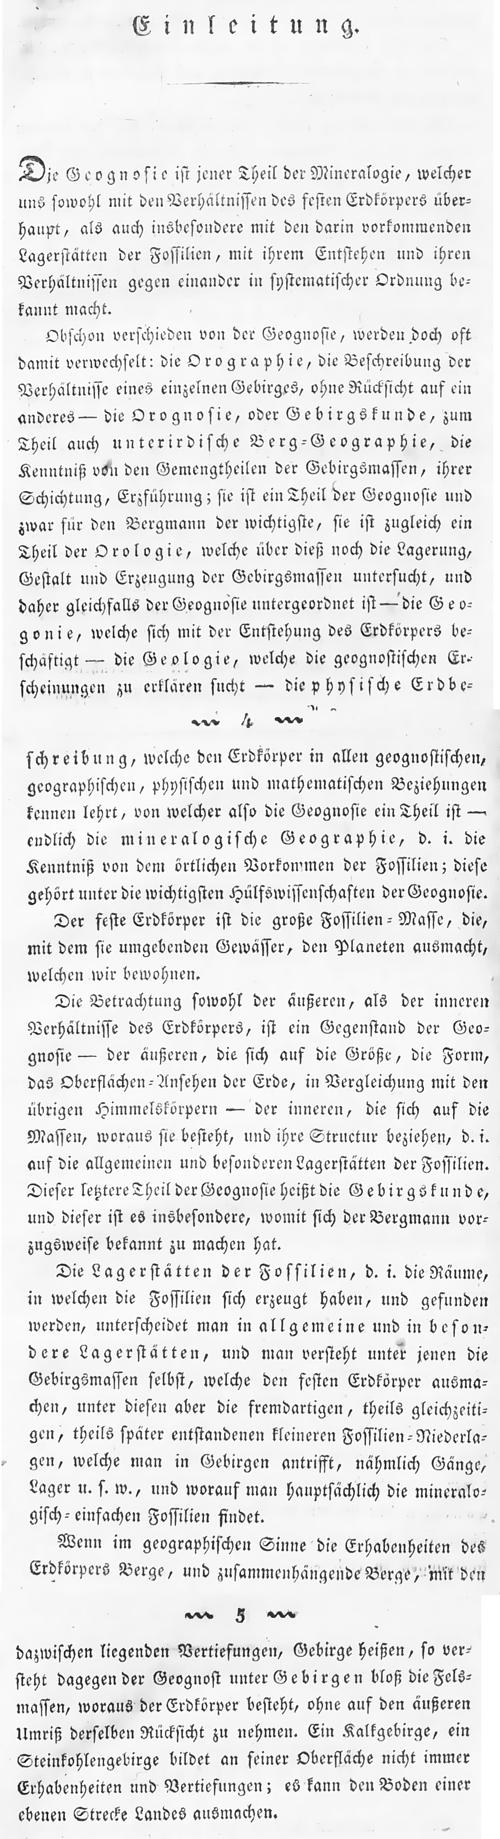 Franz Reichetzer (1821): Definition Geognosie